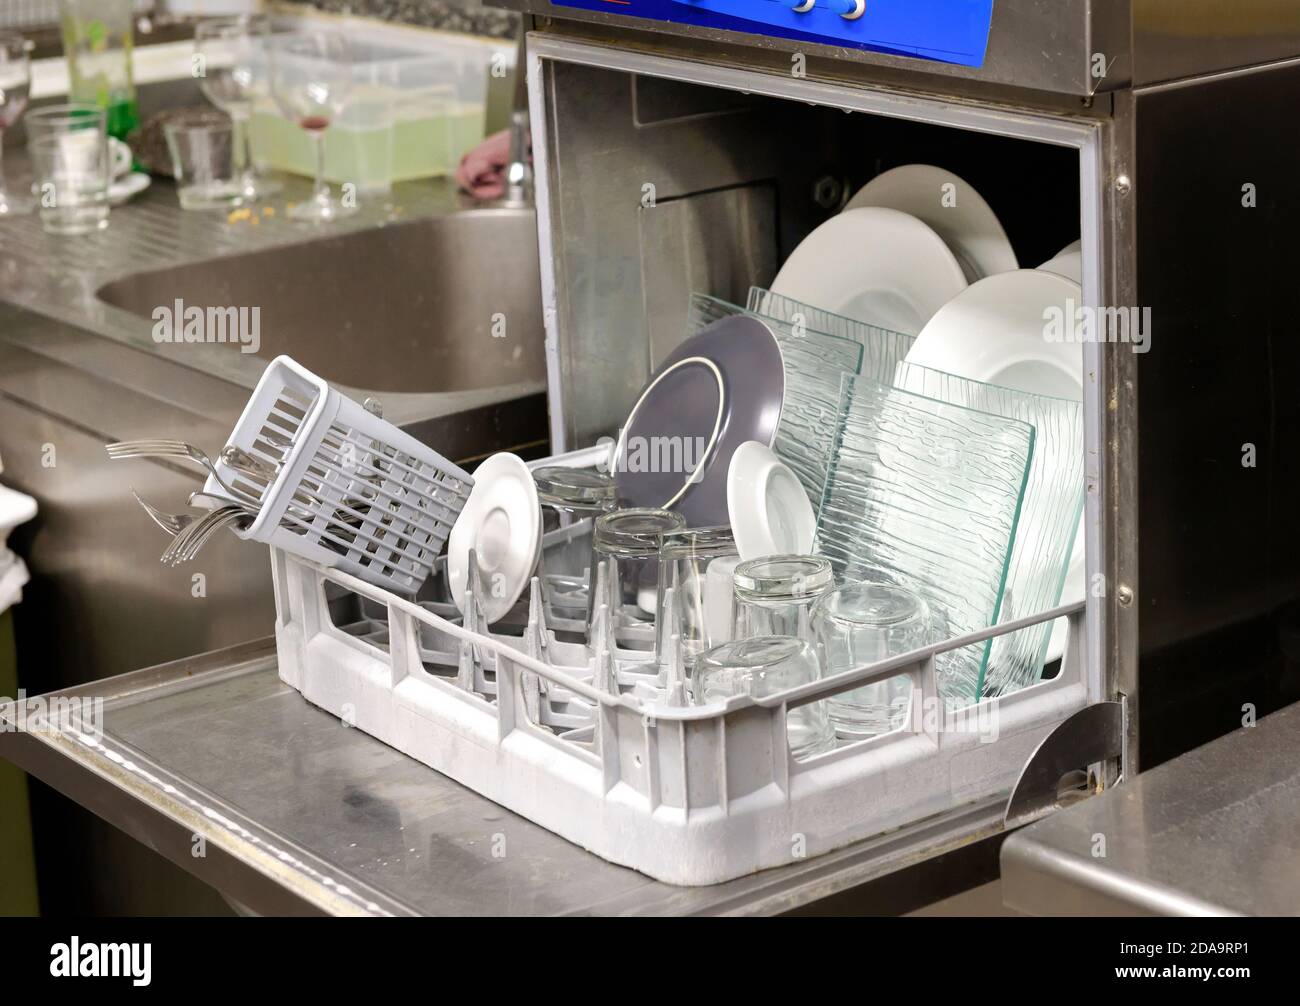 Ouvrez le lave-vaisselle rempli de vaisselle propre et de verres dans un petite cuisine de restaurant en gros plan sur la machine Banque D'Images